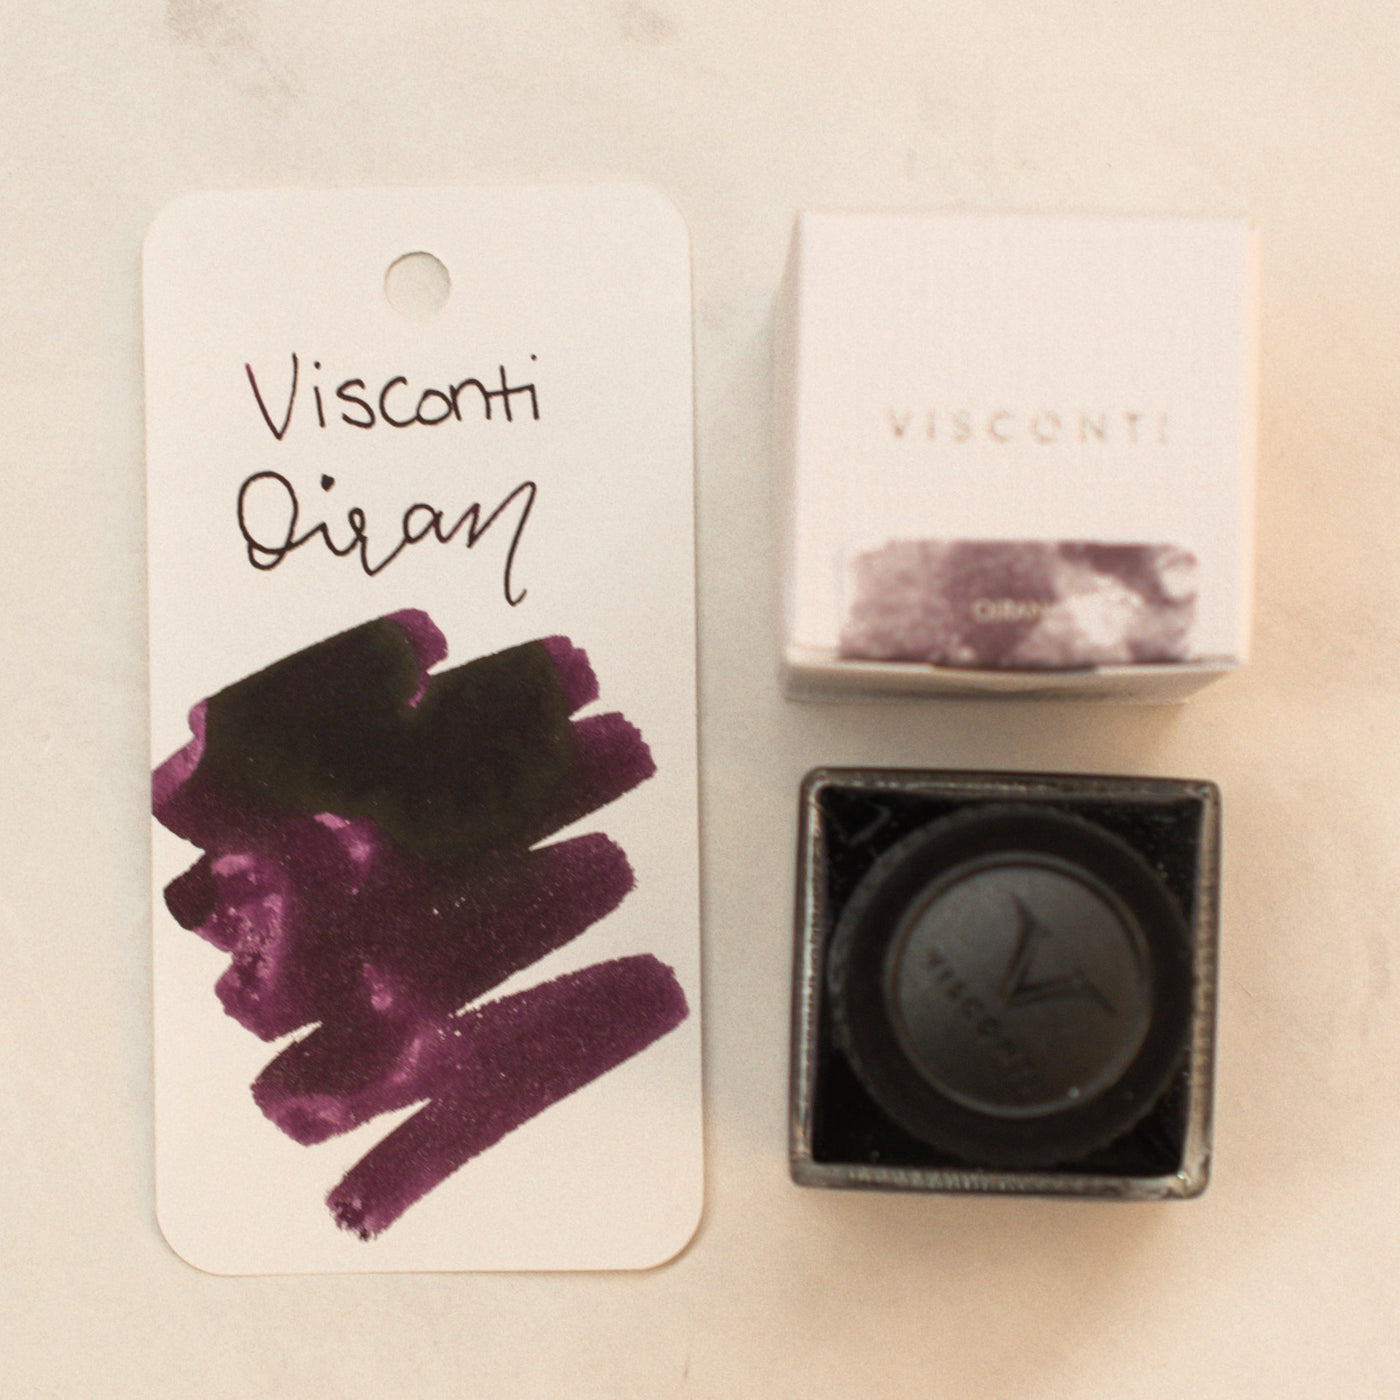 Visconti-Van-Gogh-Oiran-Ink-Bottle-Purple